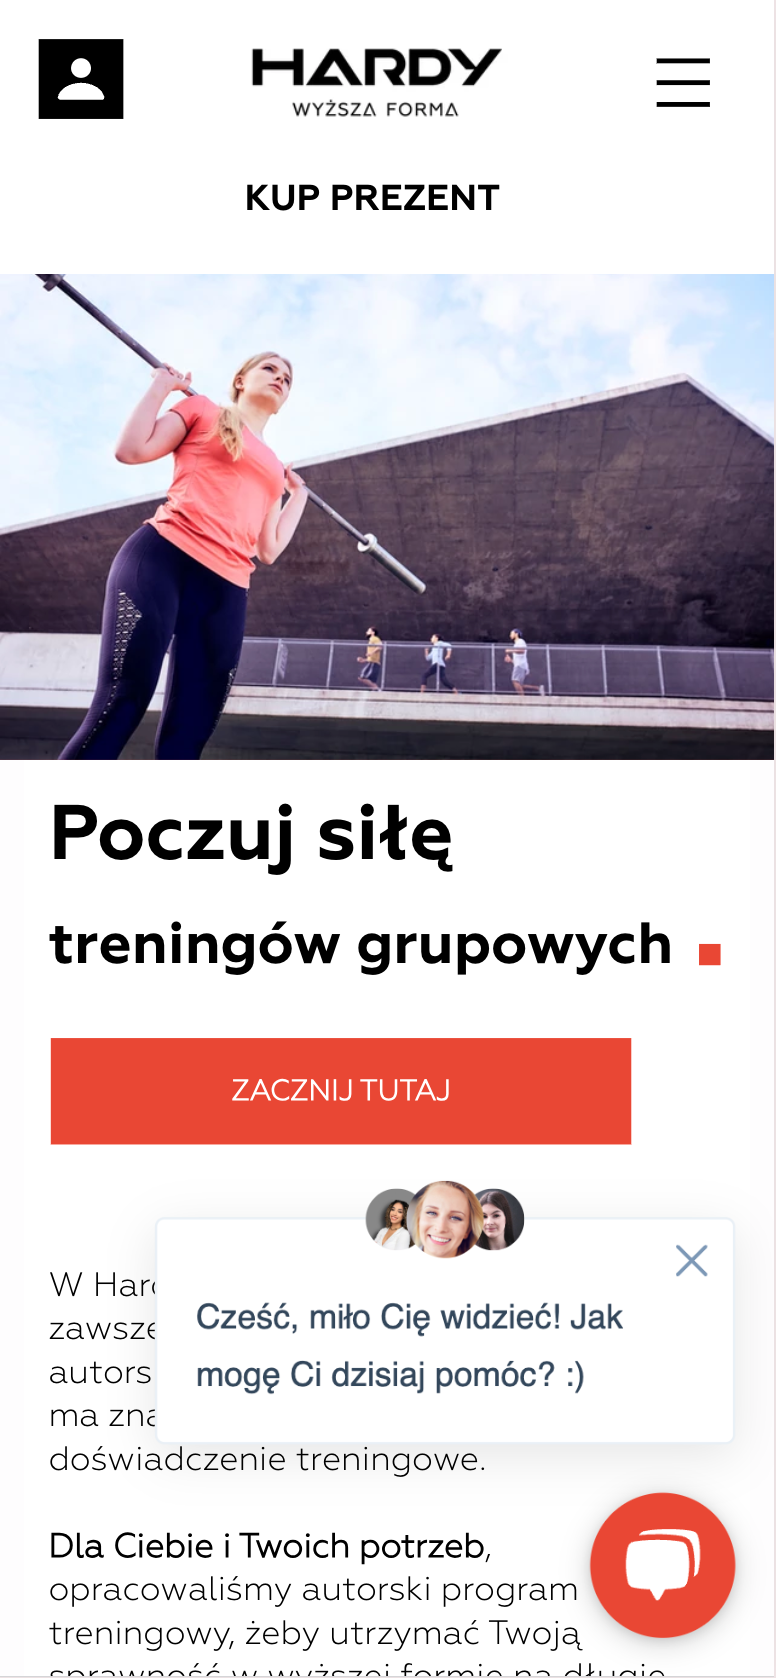 #21: Analiza nowoczesnego klubu sportowego z Wrocławia – pierwsze wrażenie i oferta (1/3)